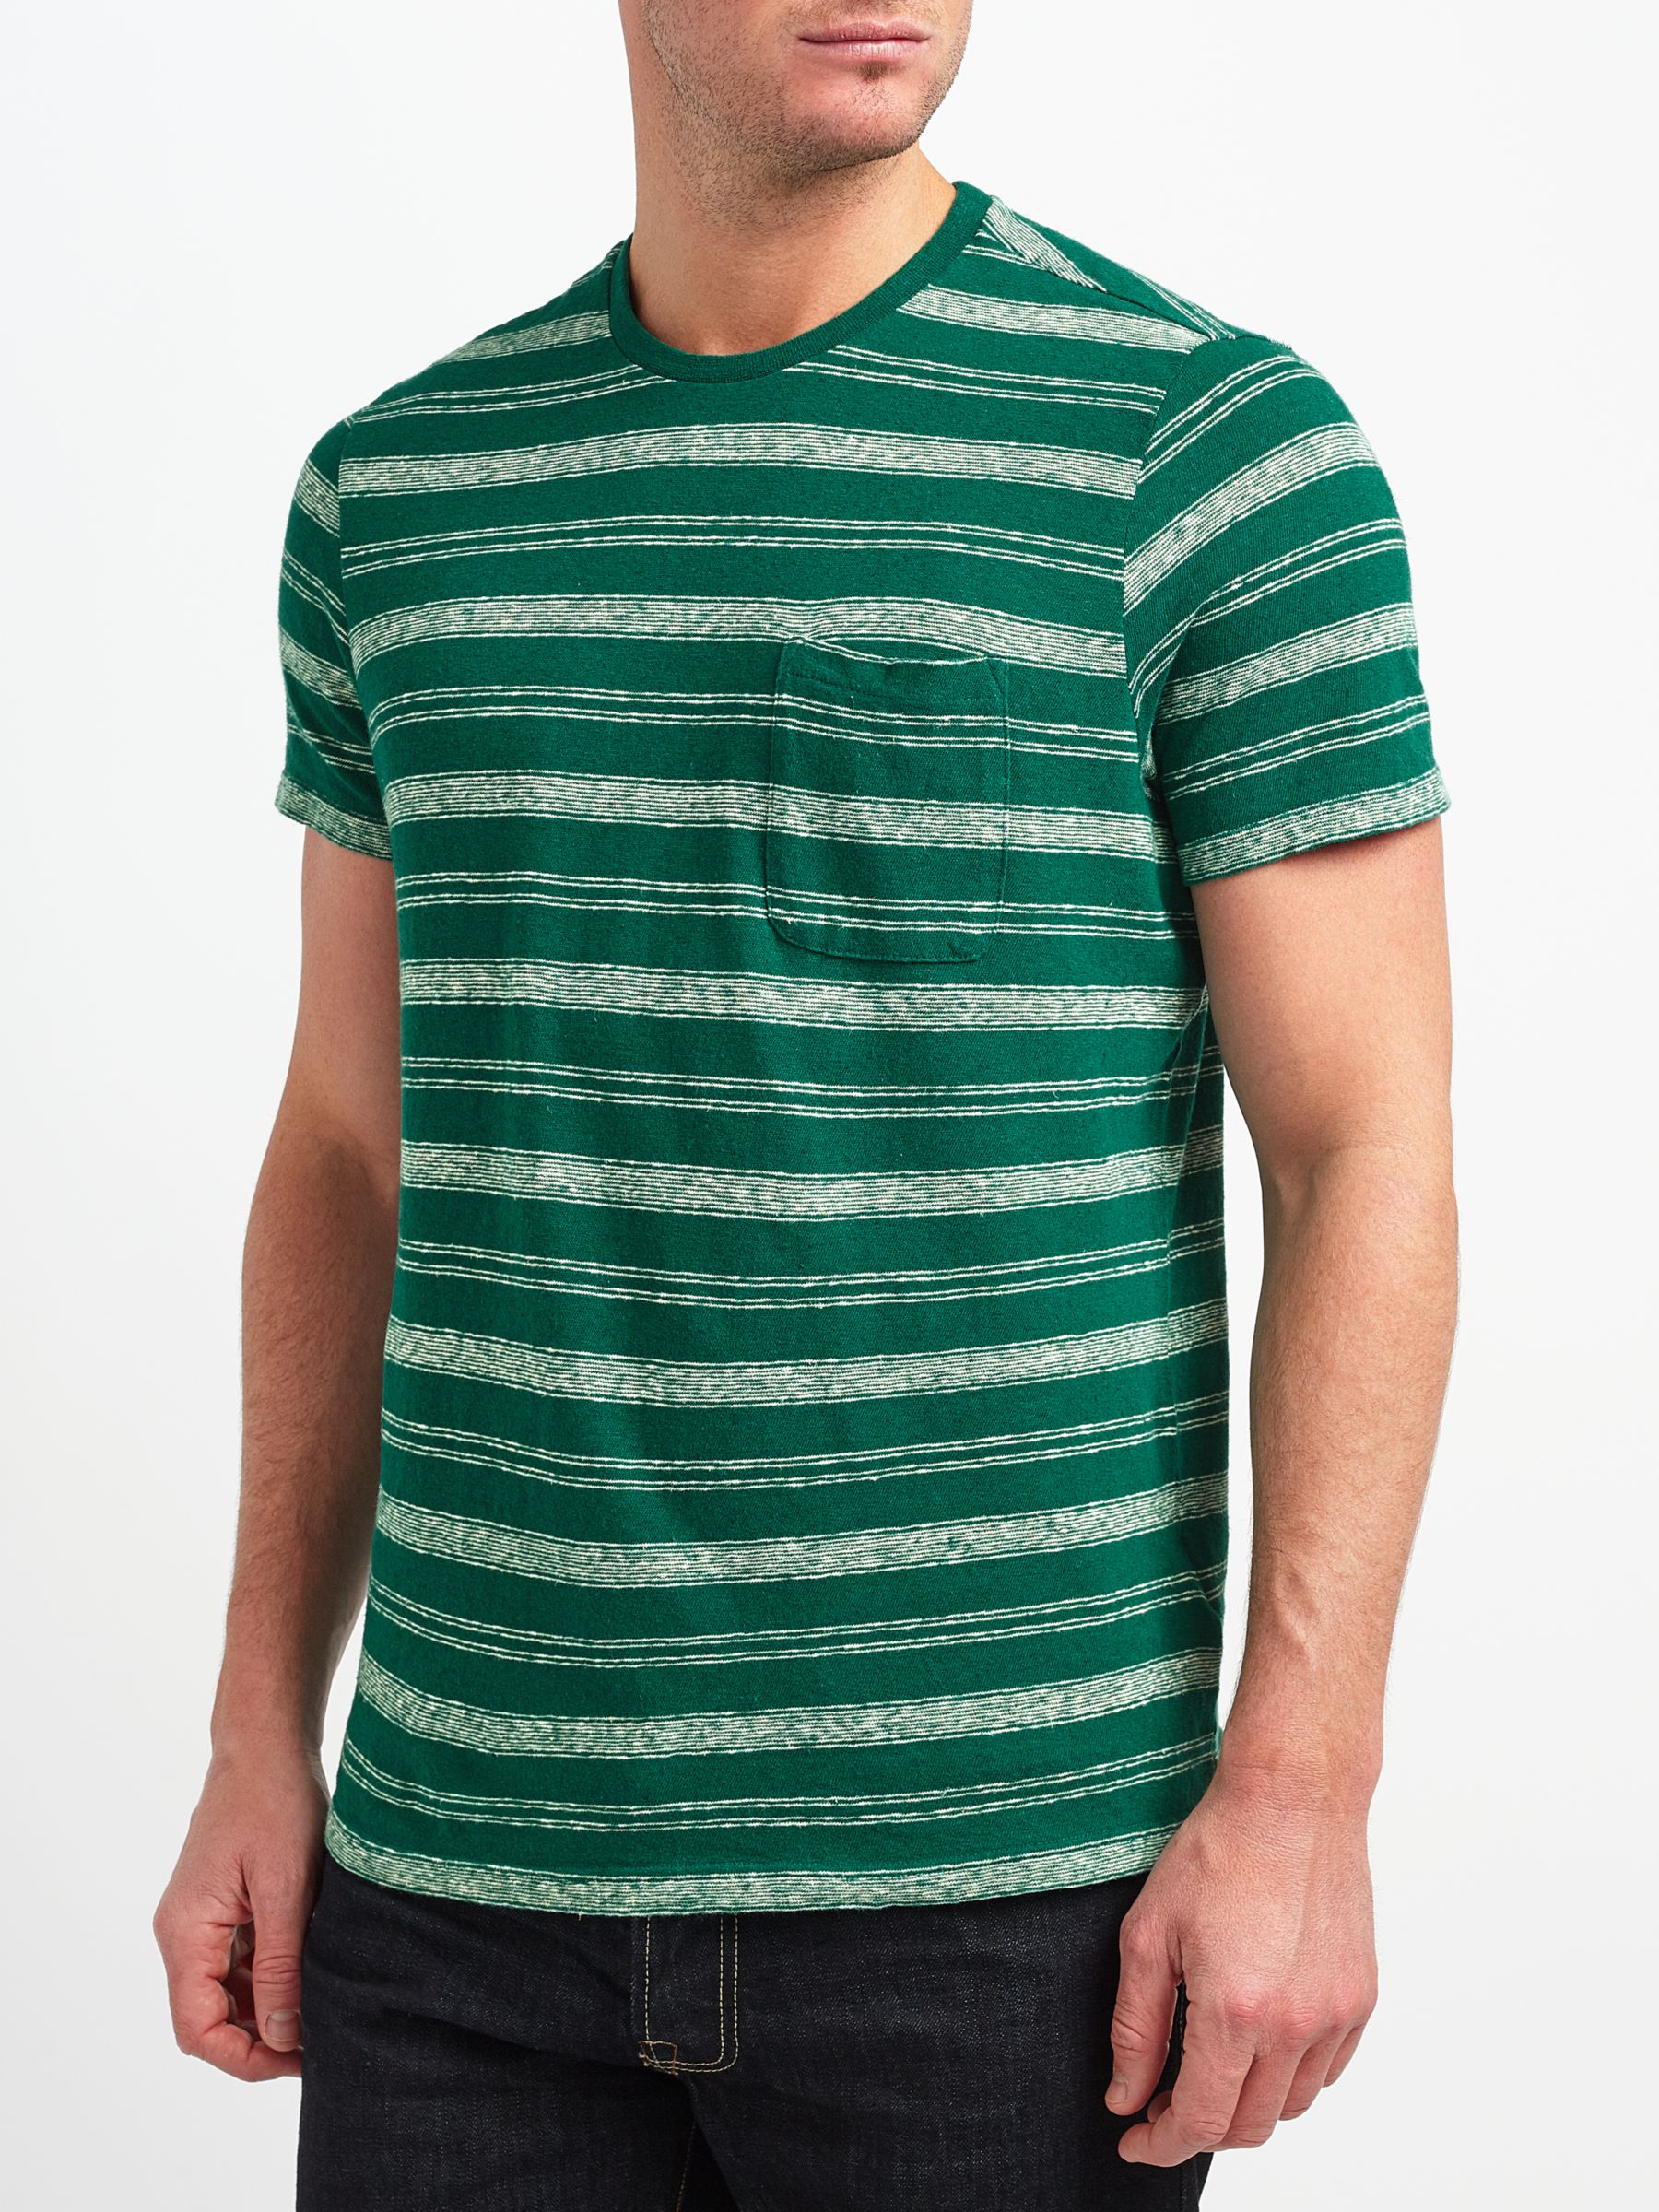 JOHN LEWIS & Co. Cotton Linen Stripe T-Shirt, Green, XL